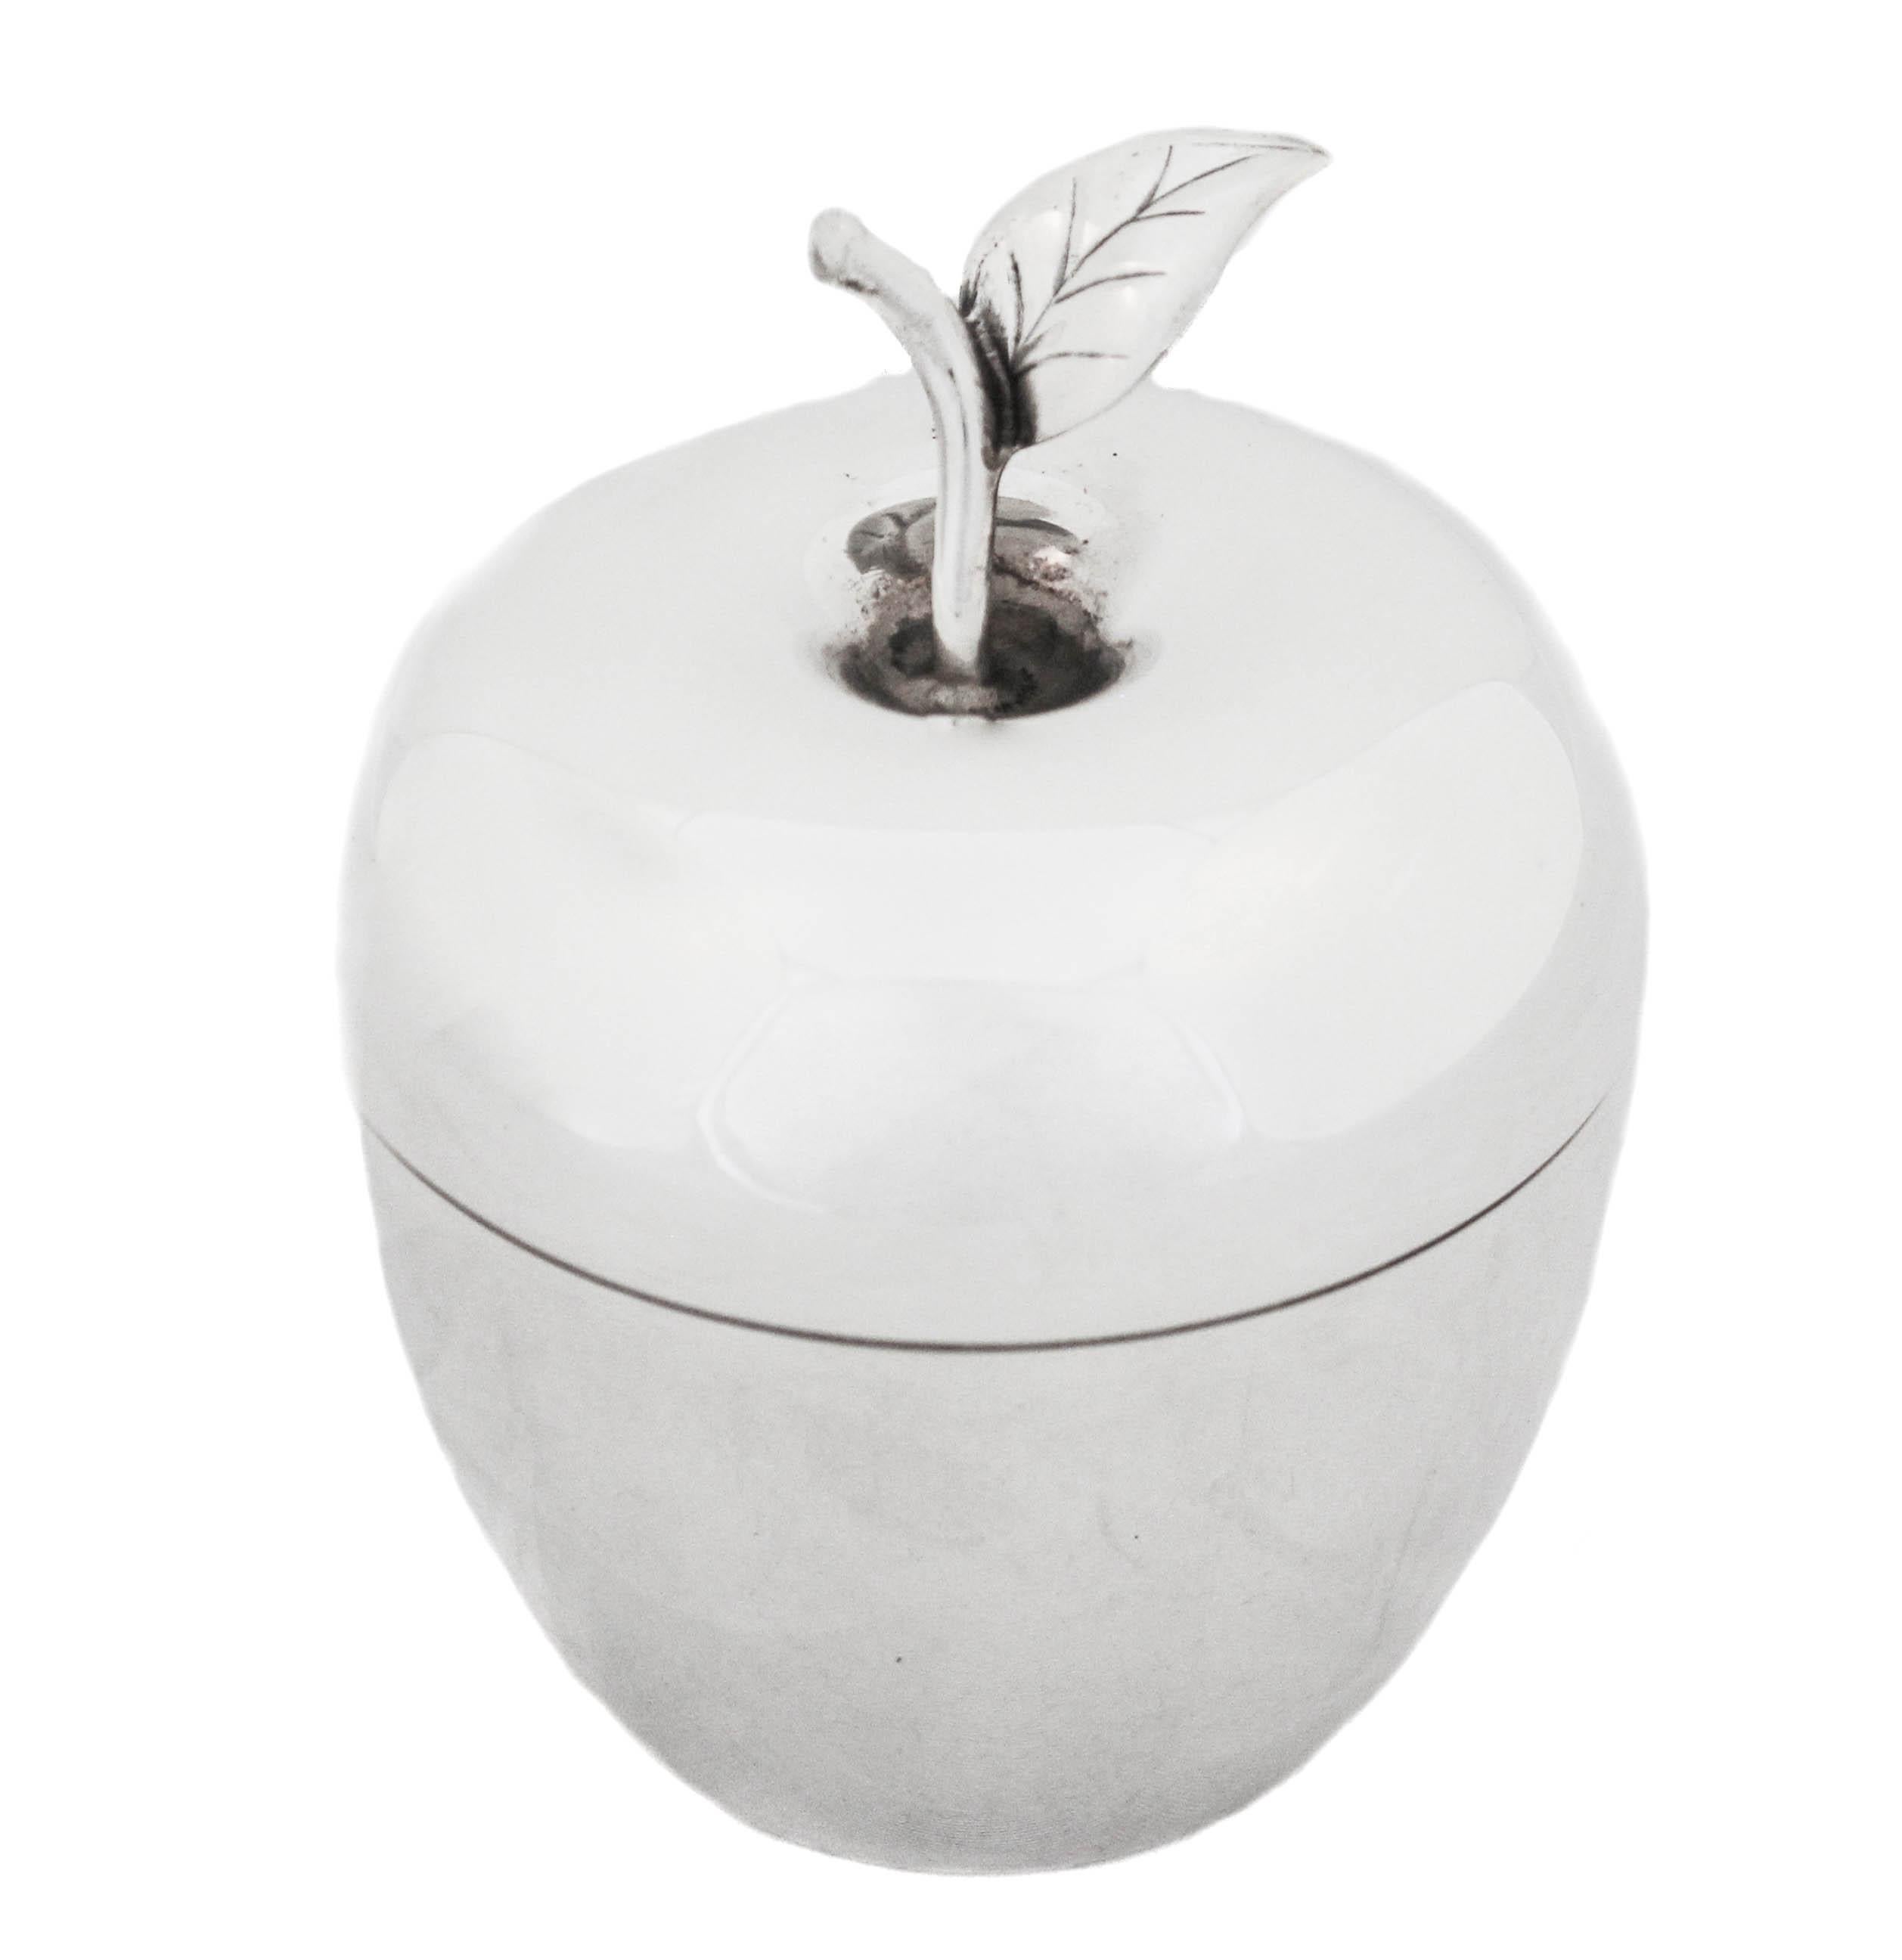 Wir freuen uns, Ihnen dieses Apfelglas aus Sterlingsilber der weltbekannten Firma Tiffany & Company anbieten zu können.  Er hat die Form eines echten Apfels mit Kerngehäuse und Blatt, lässt sich öffnen und kann Marmelade, Honig oder andere Gewürze